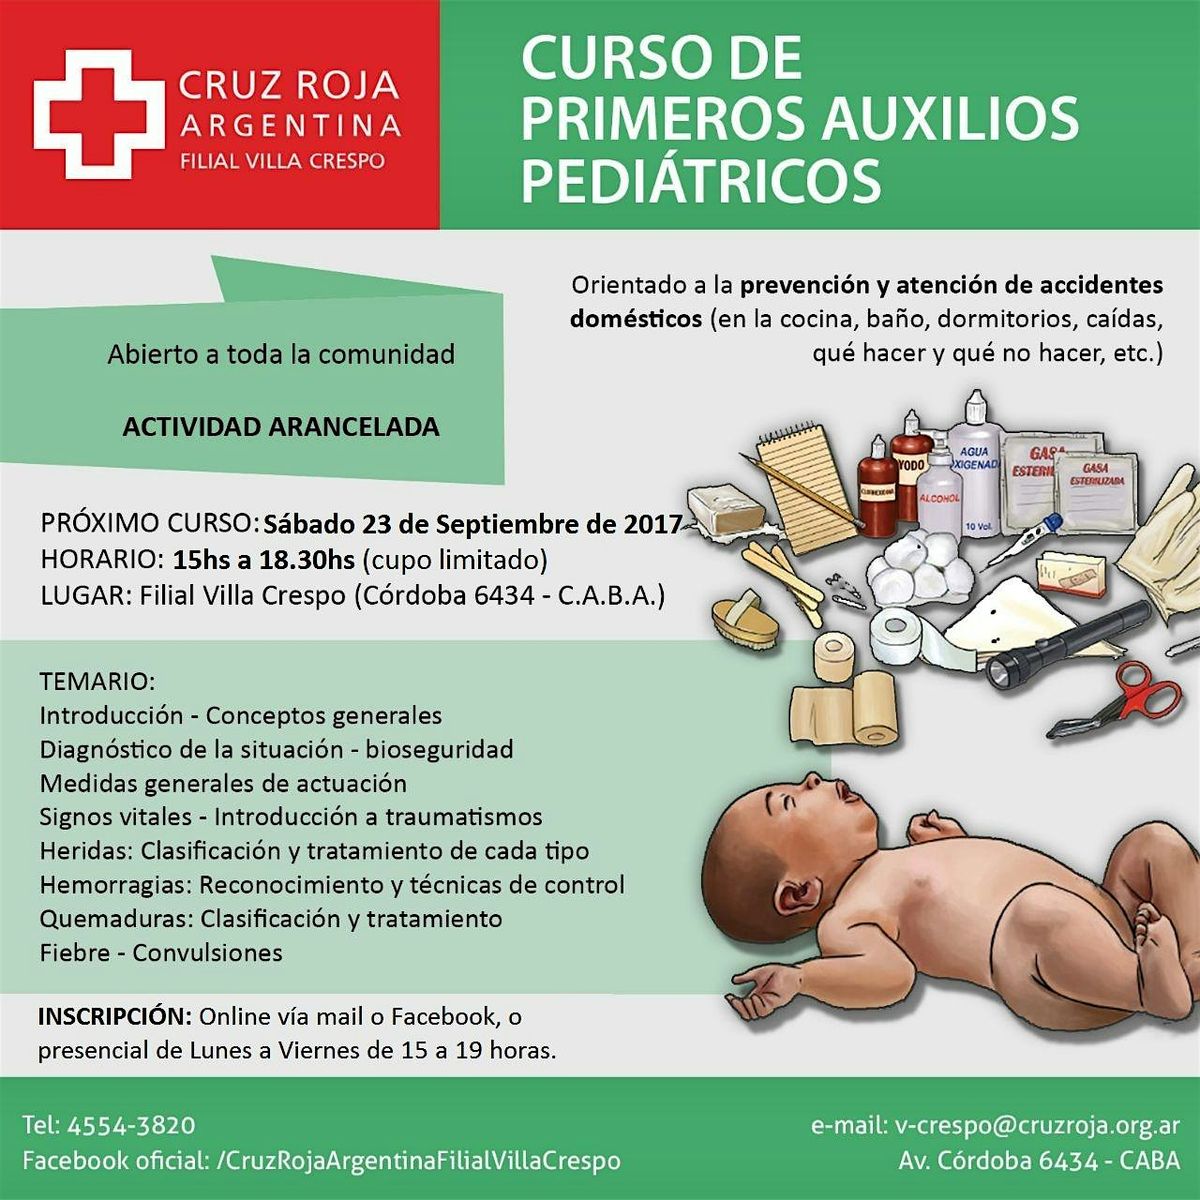 Curso de Primeros Auxilios en Cruz Roja (jueves 18-07-24) 18 a 22 hs.